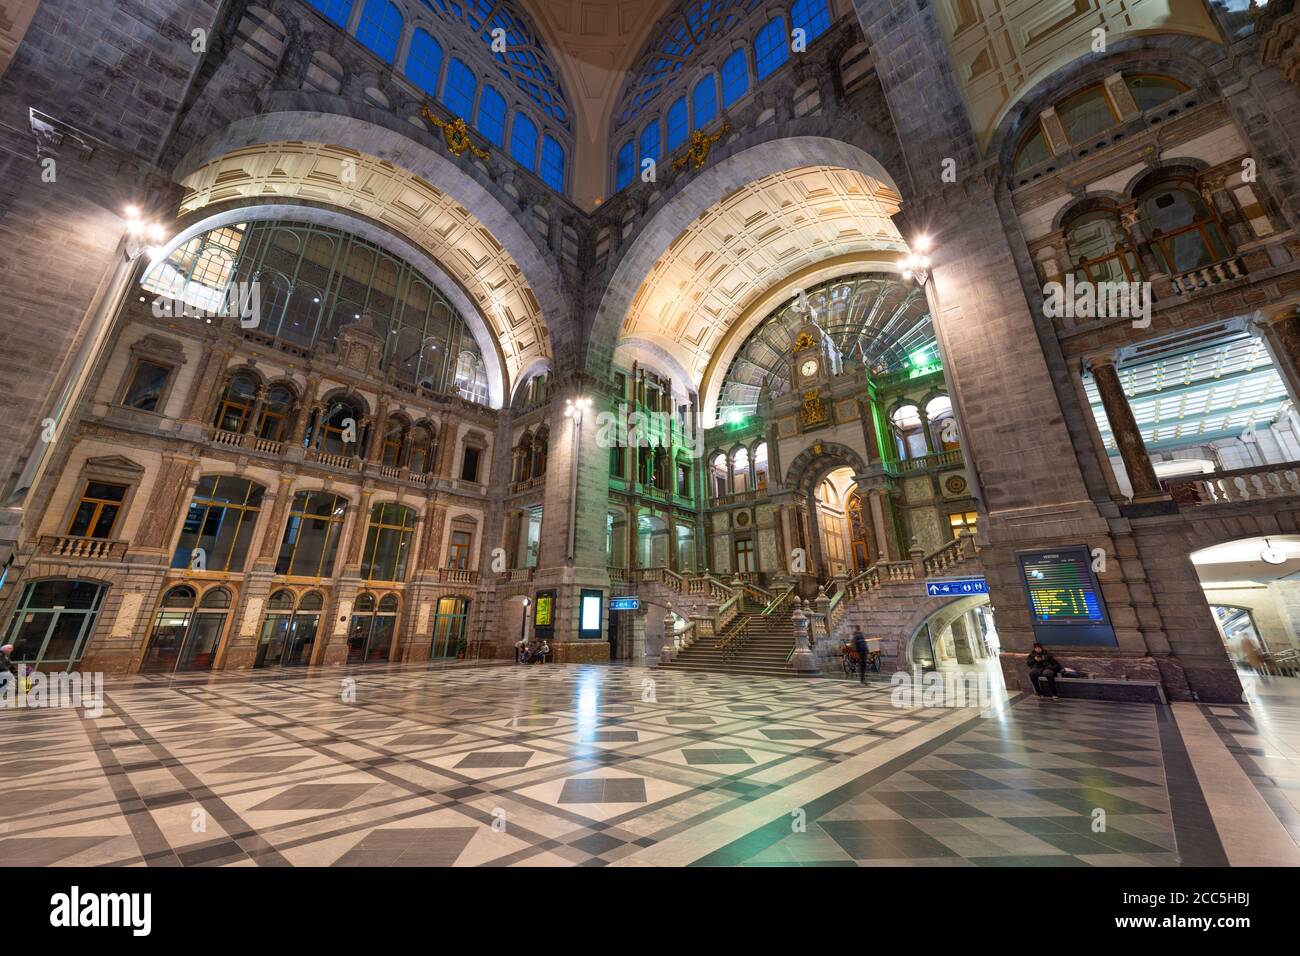 ANVERSA, BELGIO - 5 MARZO 2020: La principale sala della stazione ferroviaria di Anversa-Centraal, risalente al 1905. Foto Stock